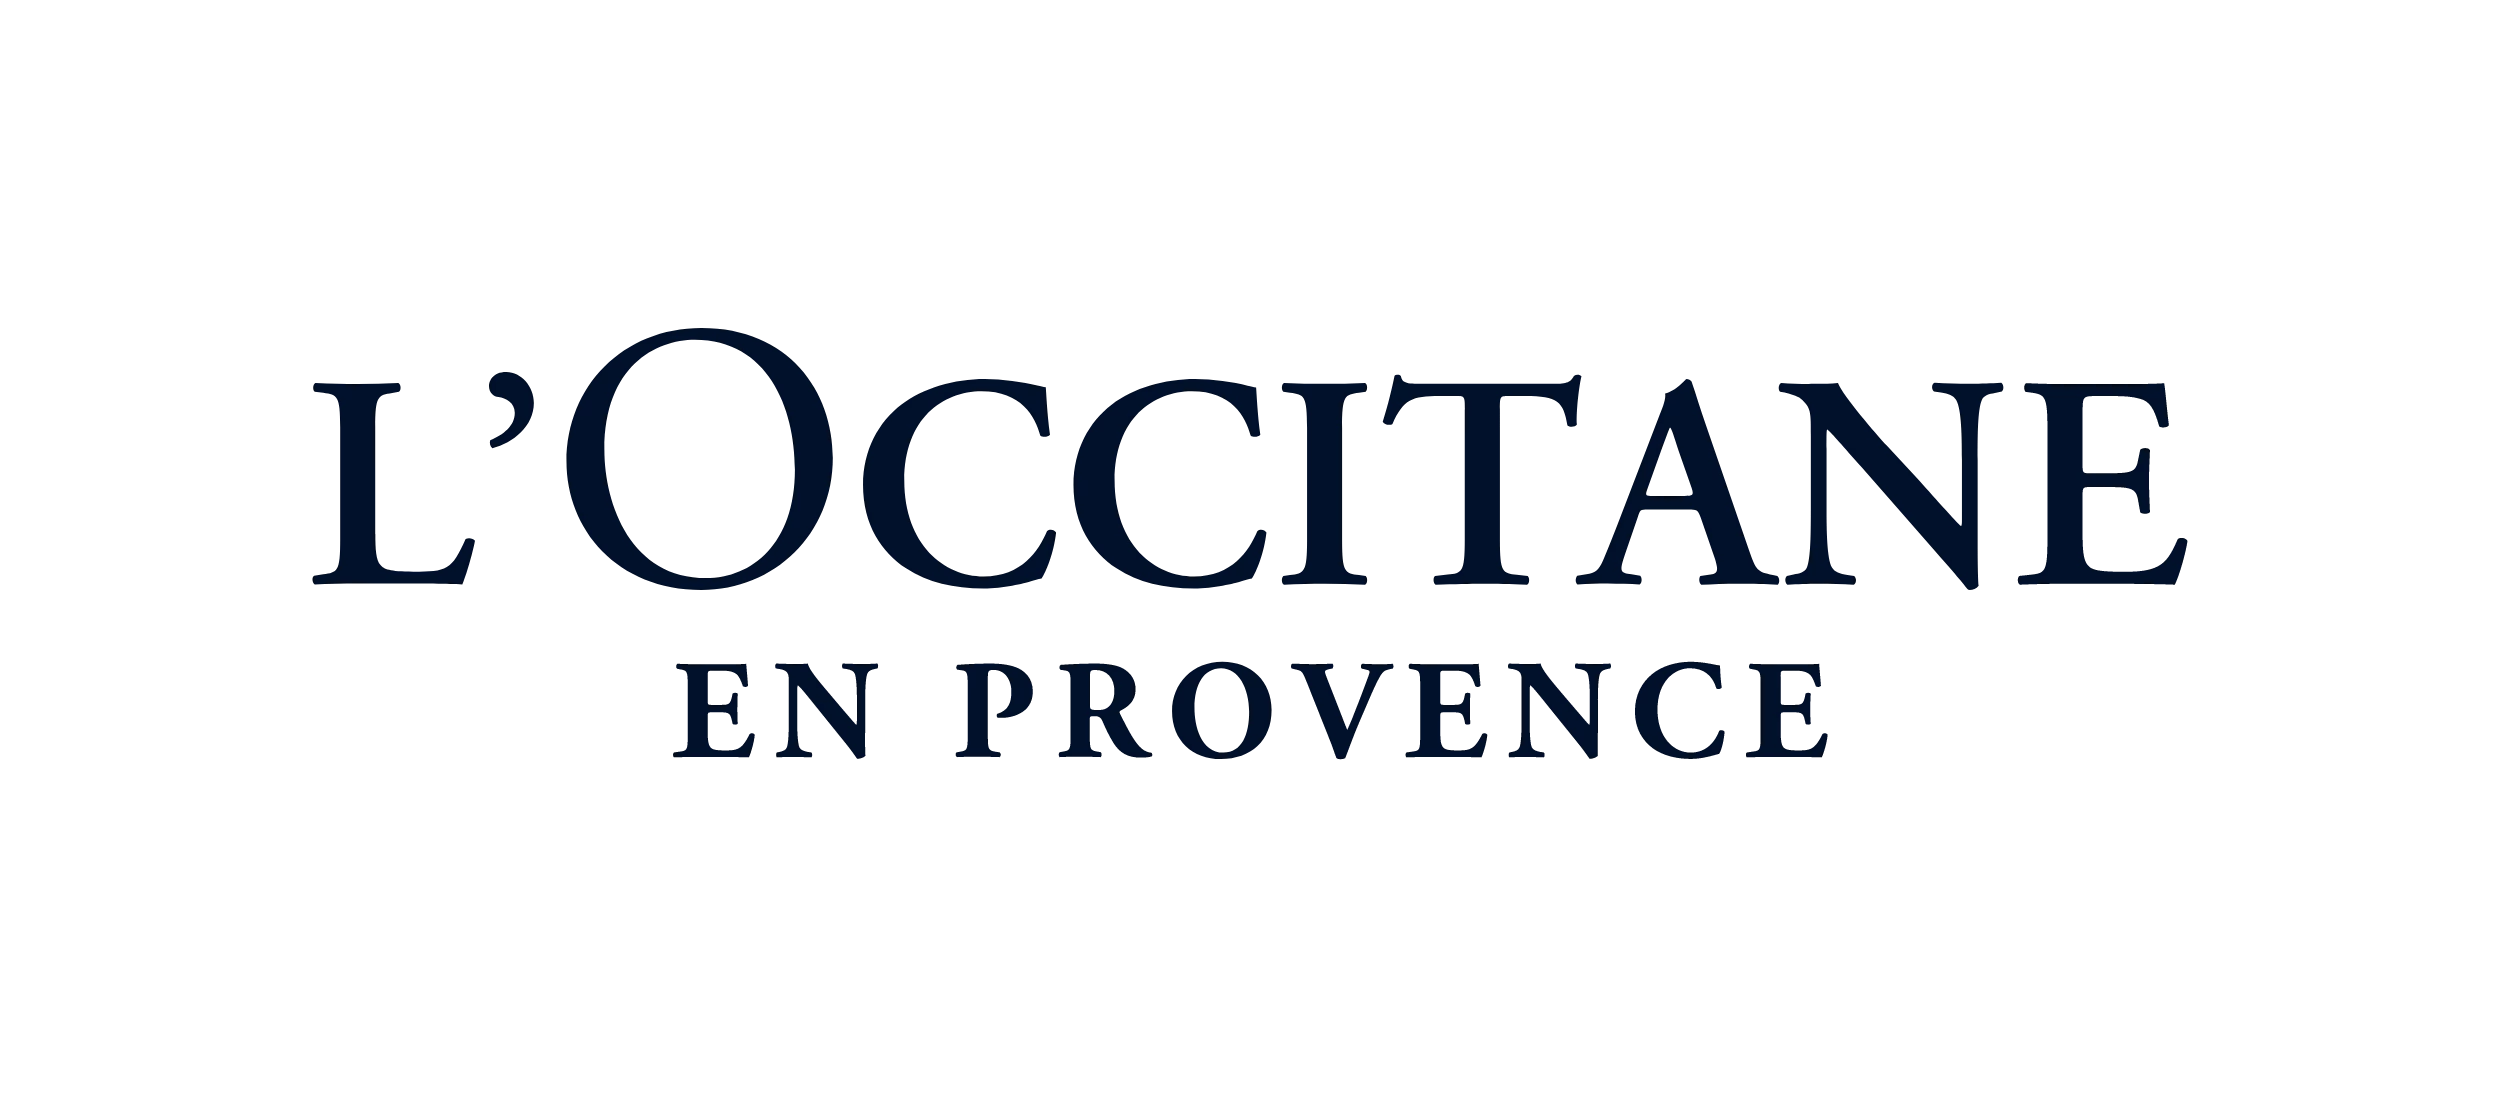 L'occitane logo